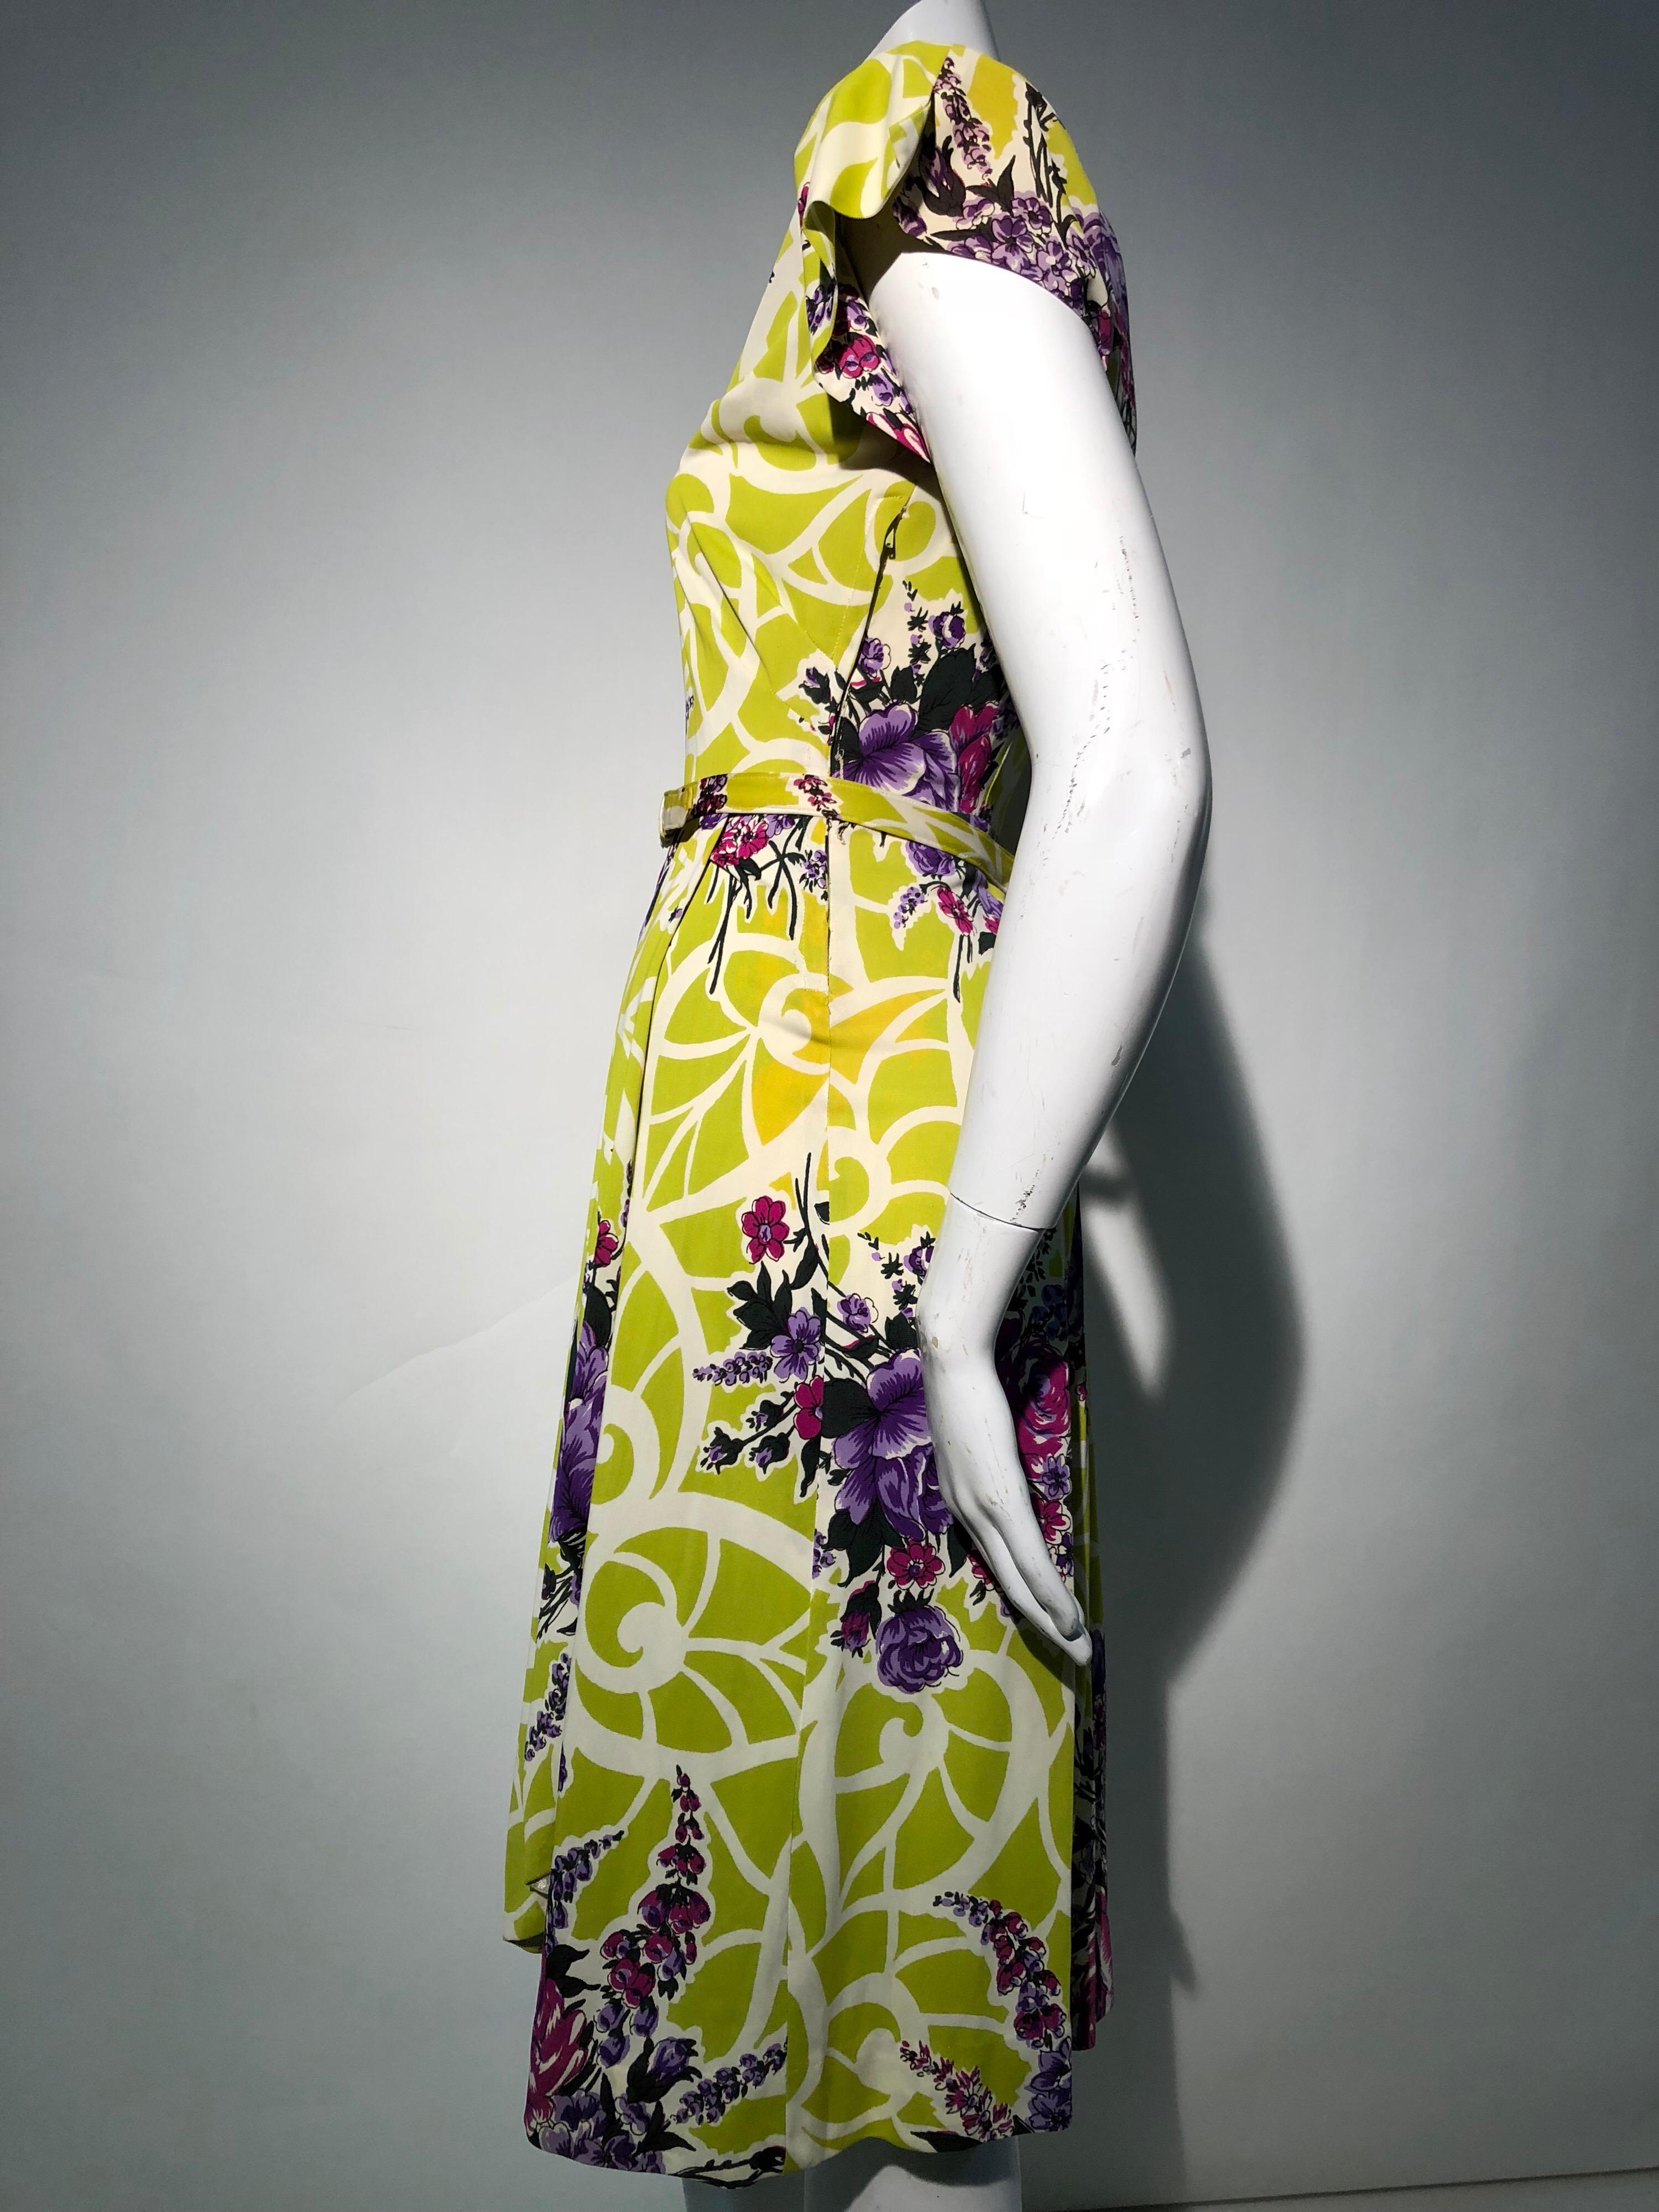 Ein unglaubliches Kleid im ikonischen Swing-Stil der 1940er Jahre mit überragenden Styling-Details aus den 1940er Jahren: quadratischer Ausschnitt, der um ein paar koordinierende Kleiderspangen bittet, hohe strukturierte Schulterpolster für das